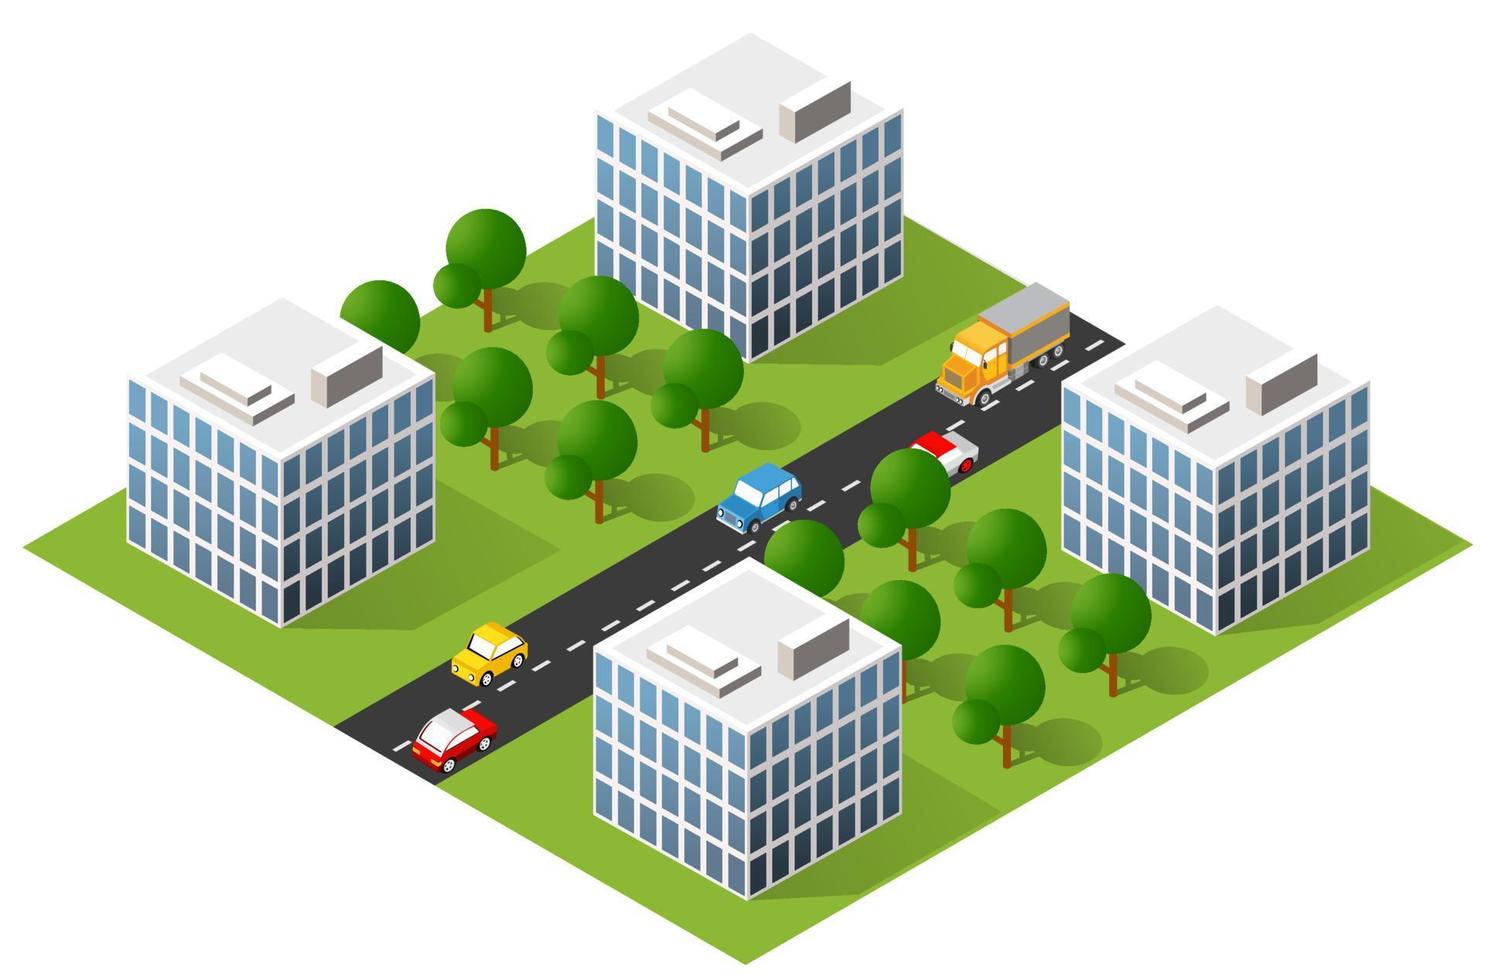 área urbana da cidade de ilustração 3d isométrica com muitas casas e arranha-céus, ruas, árvores e veículos vetor